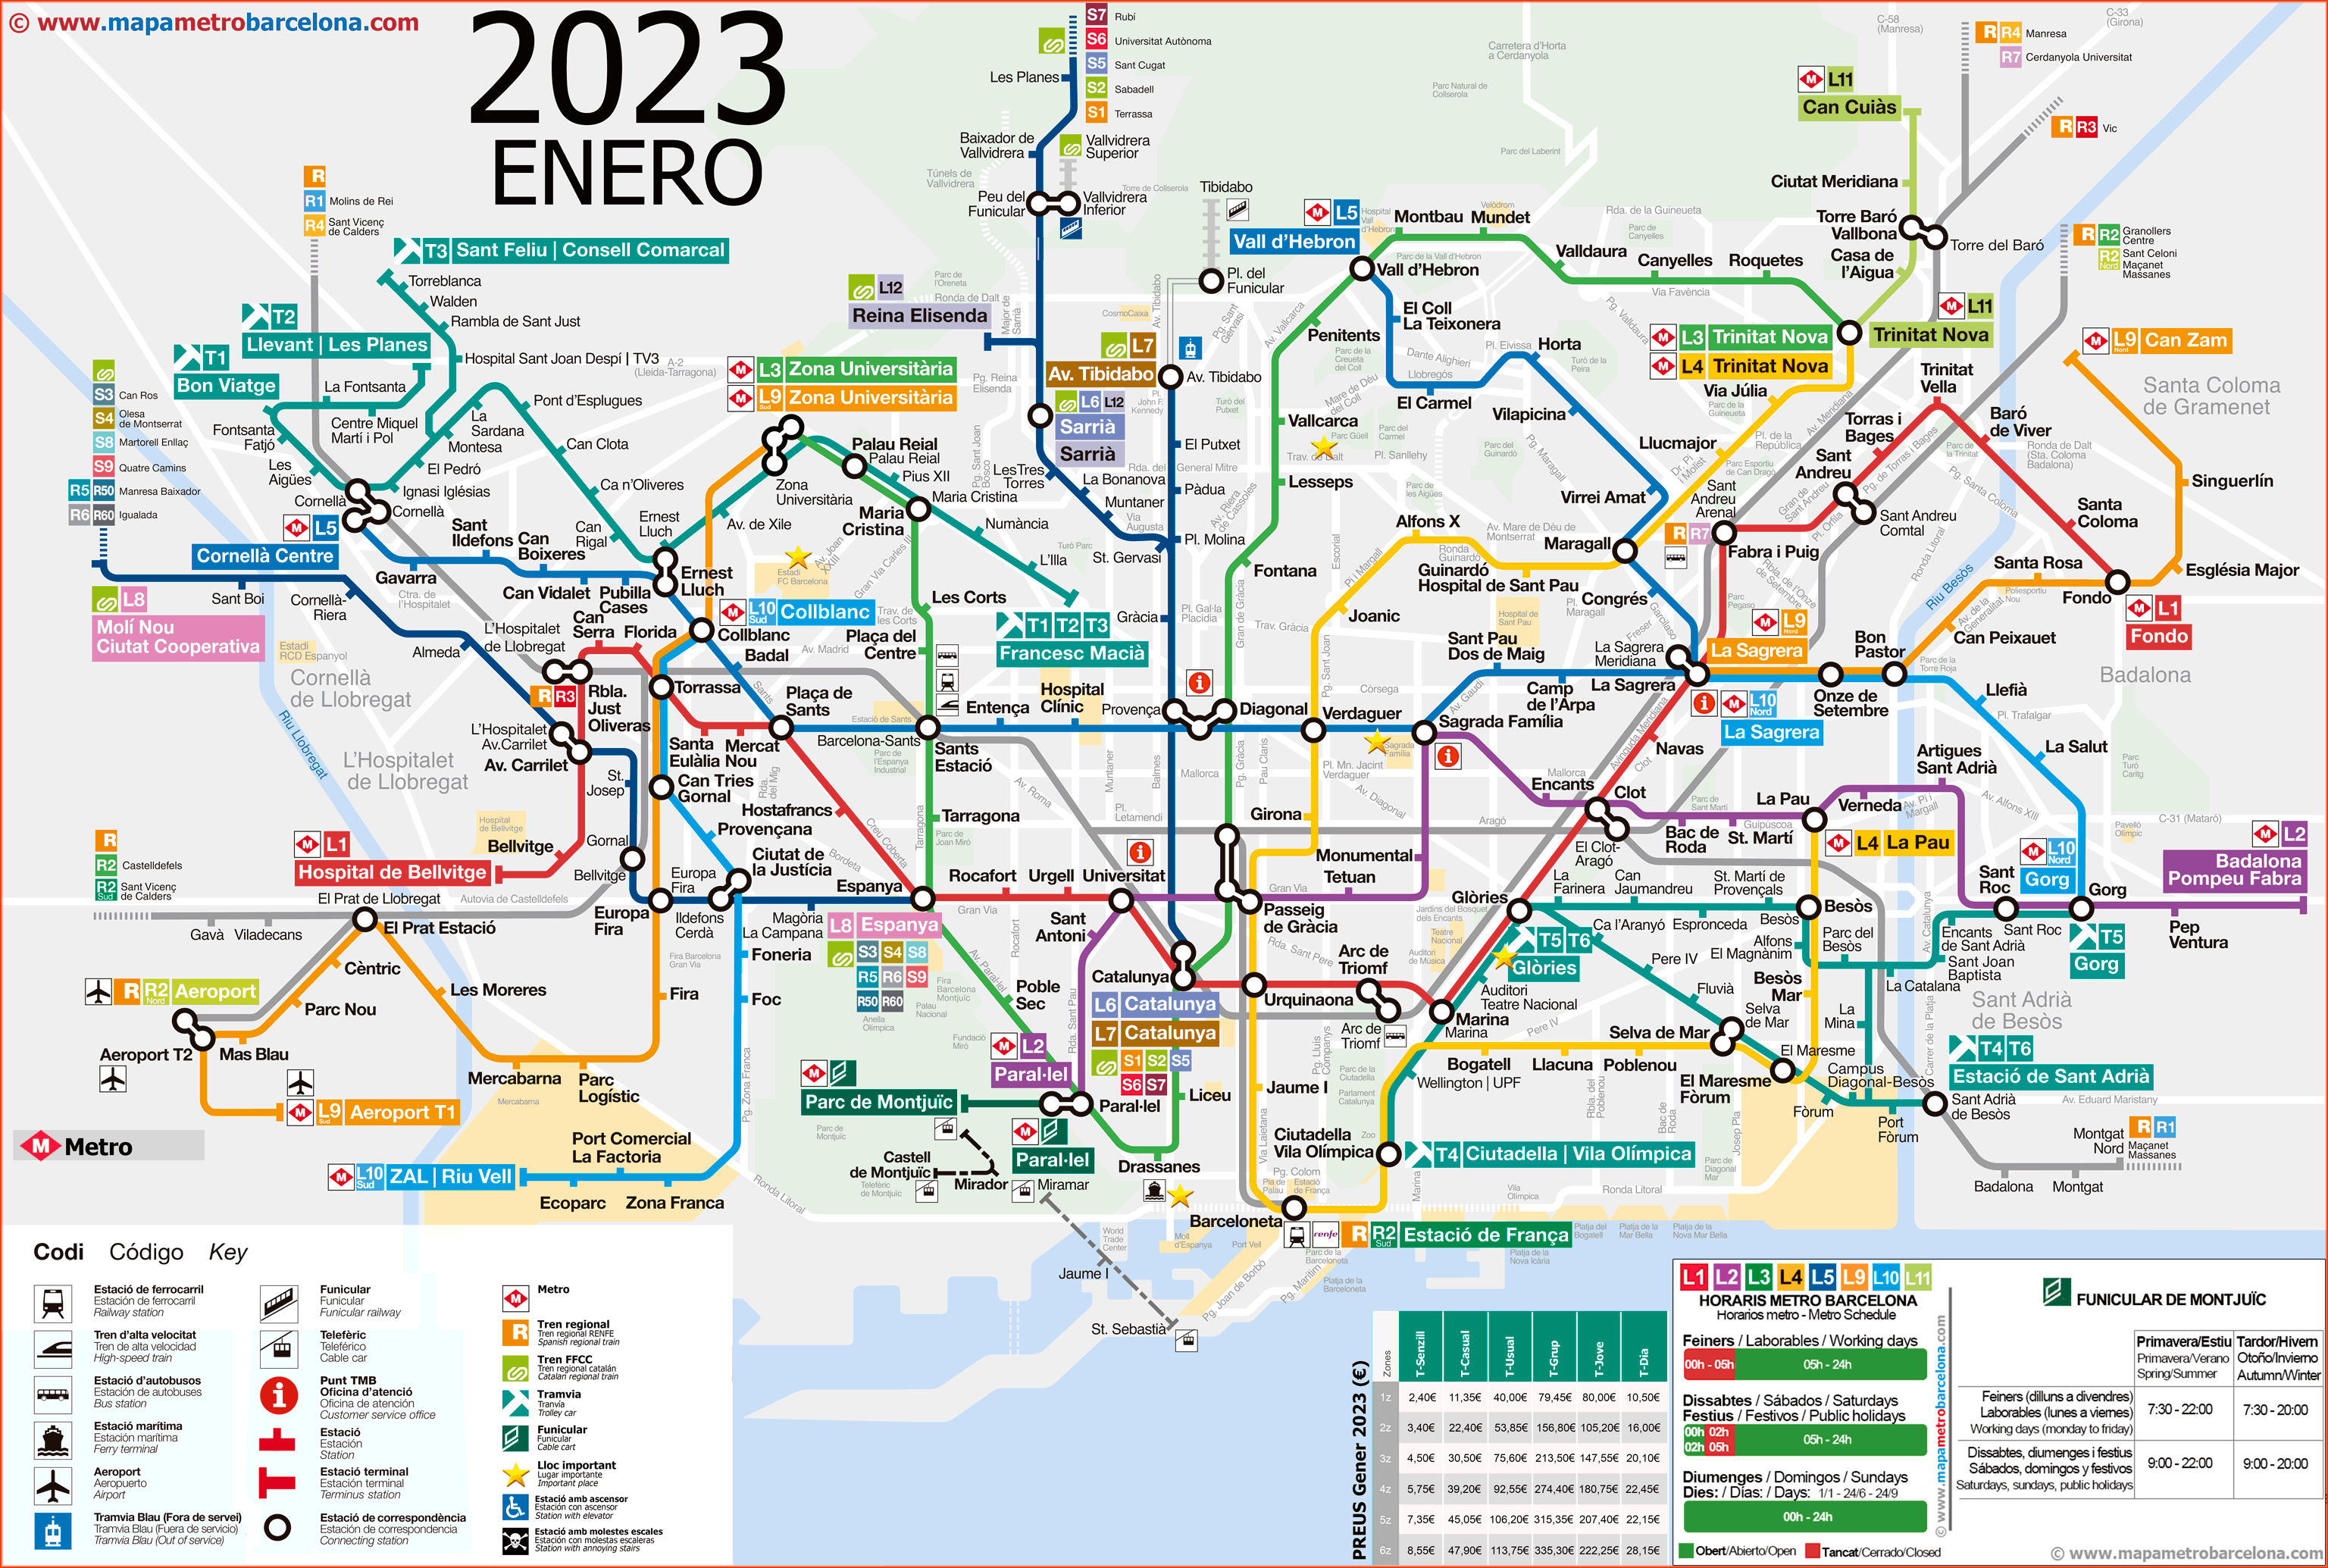 Kaart van de metro van Barcelona